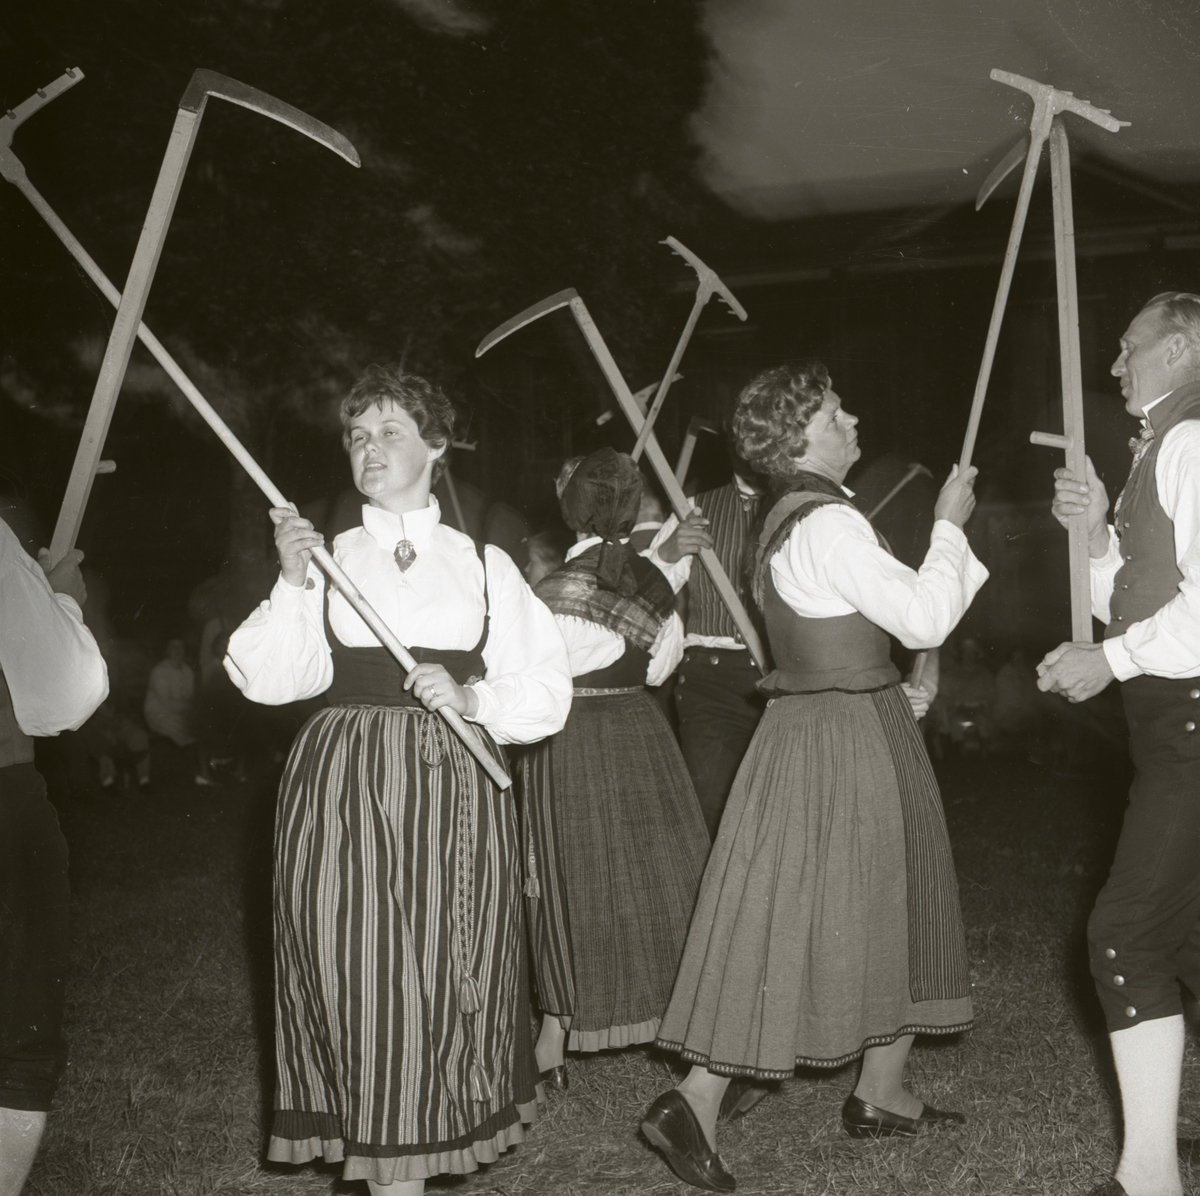 Danslaget genomför en dans där de håller upp varsin lie eller kratta. De är iklädda folkdräkter, 1962 i Rengsjö.